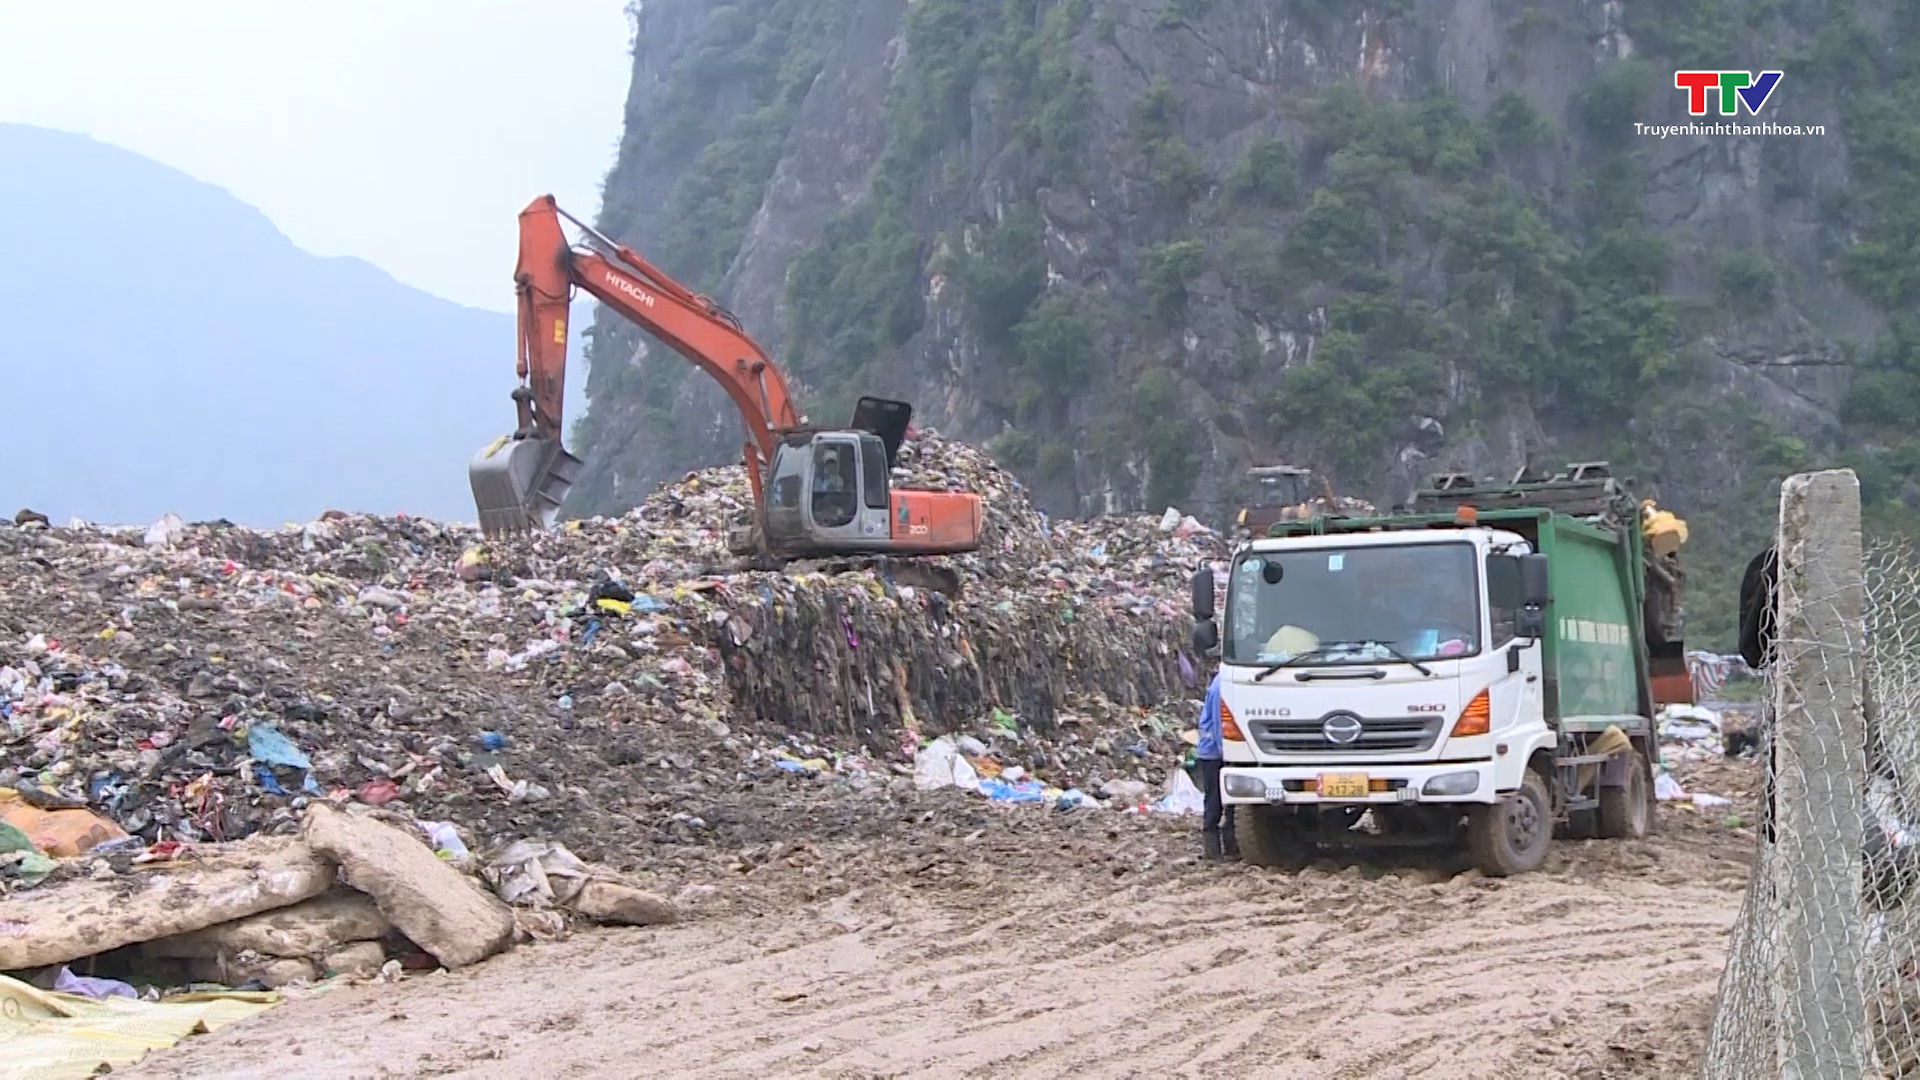 Cần có giải pháp chống quá tải và ô nhiễm môi trường ở bãi rác Đông Nam- Ảnh 2.